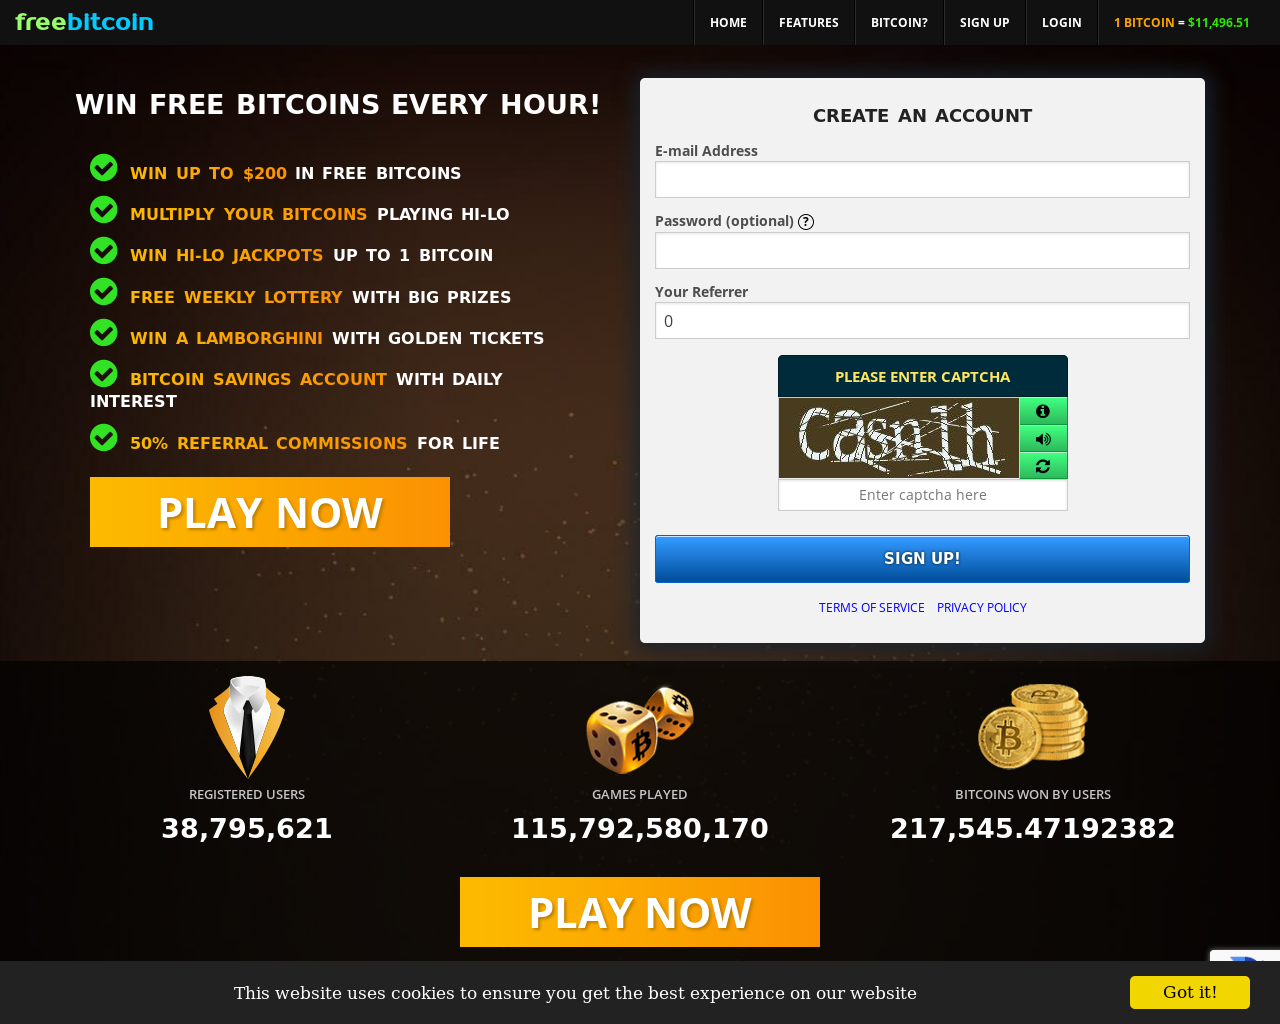 Free bitcoin com отзывы курс обмена валют банках хабаровска